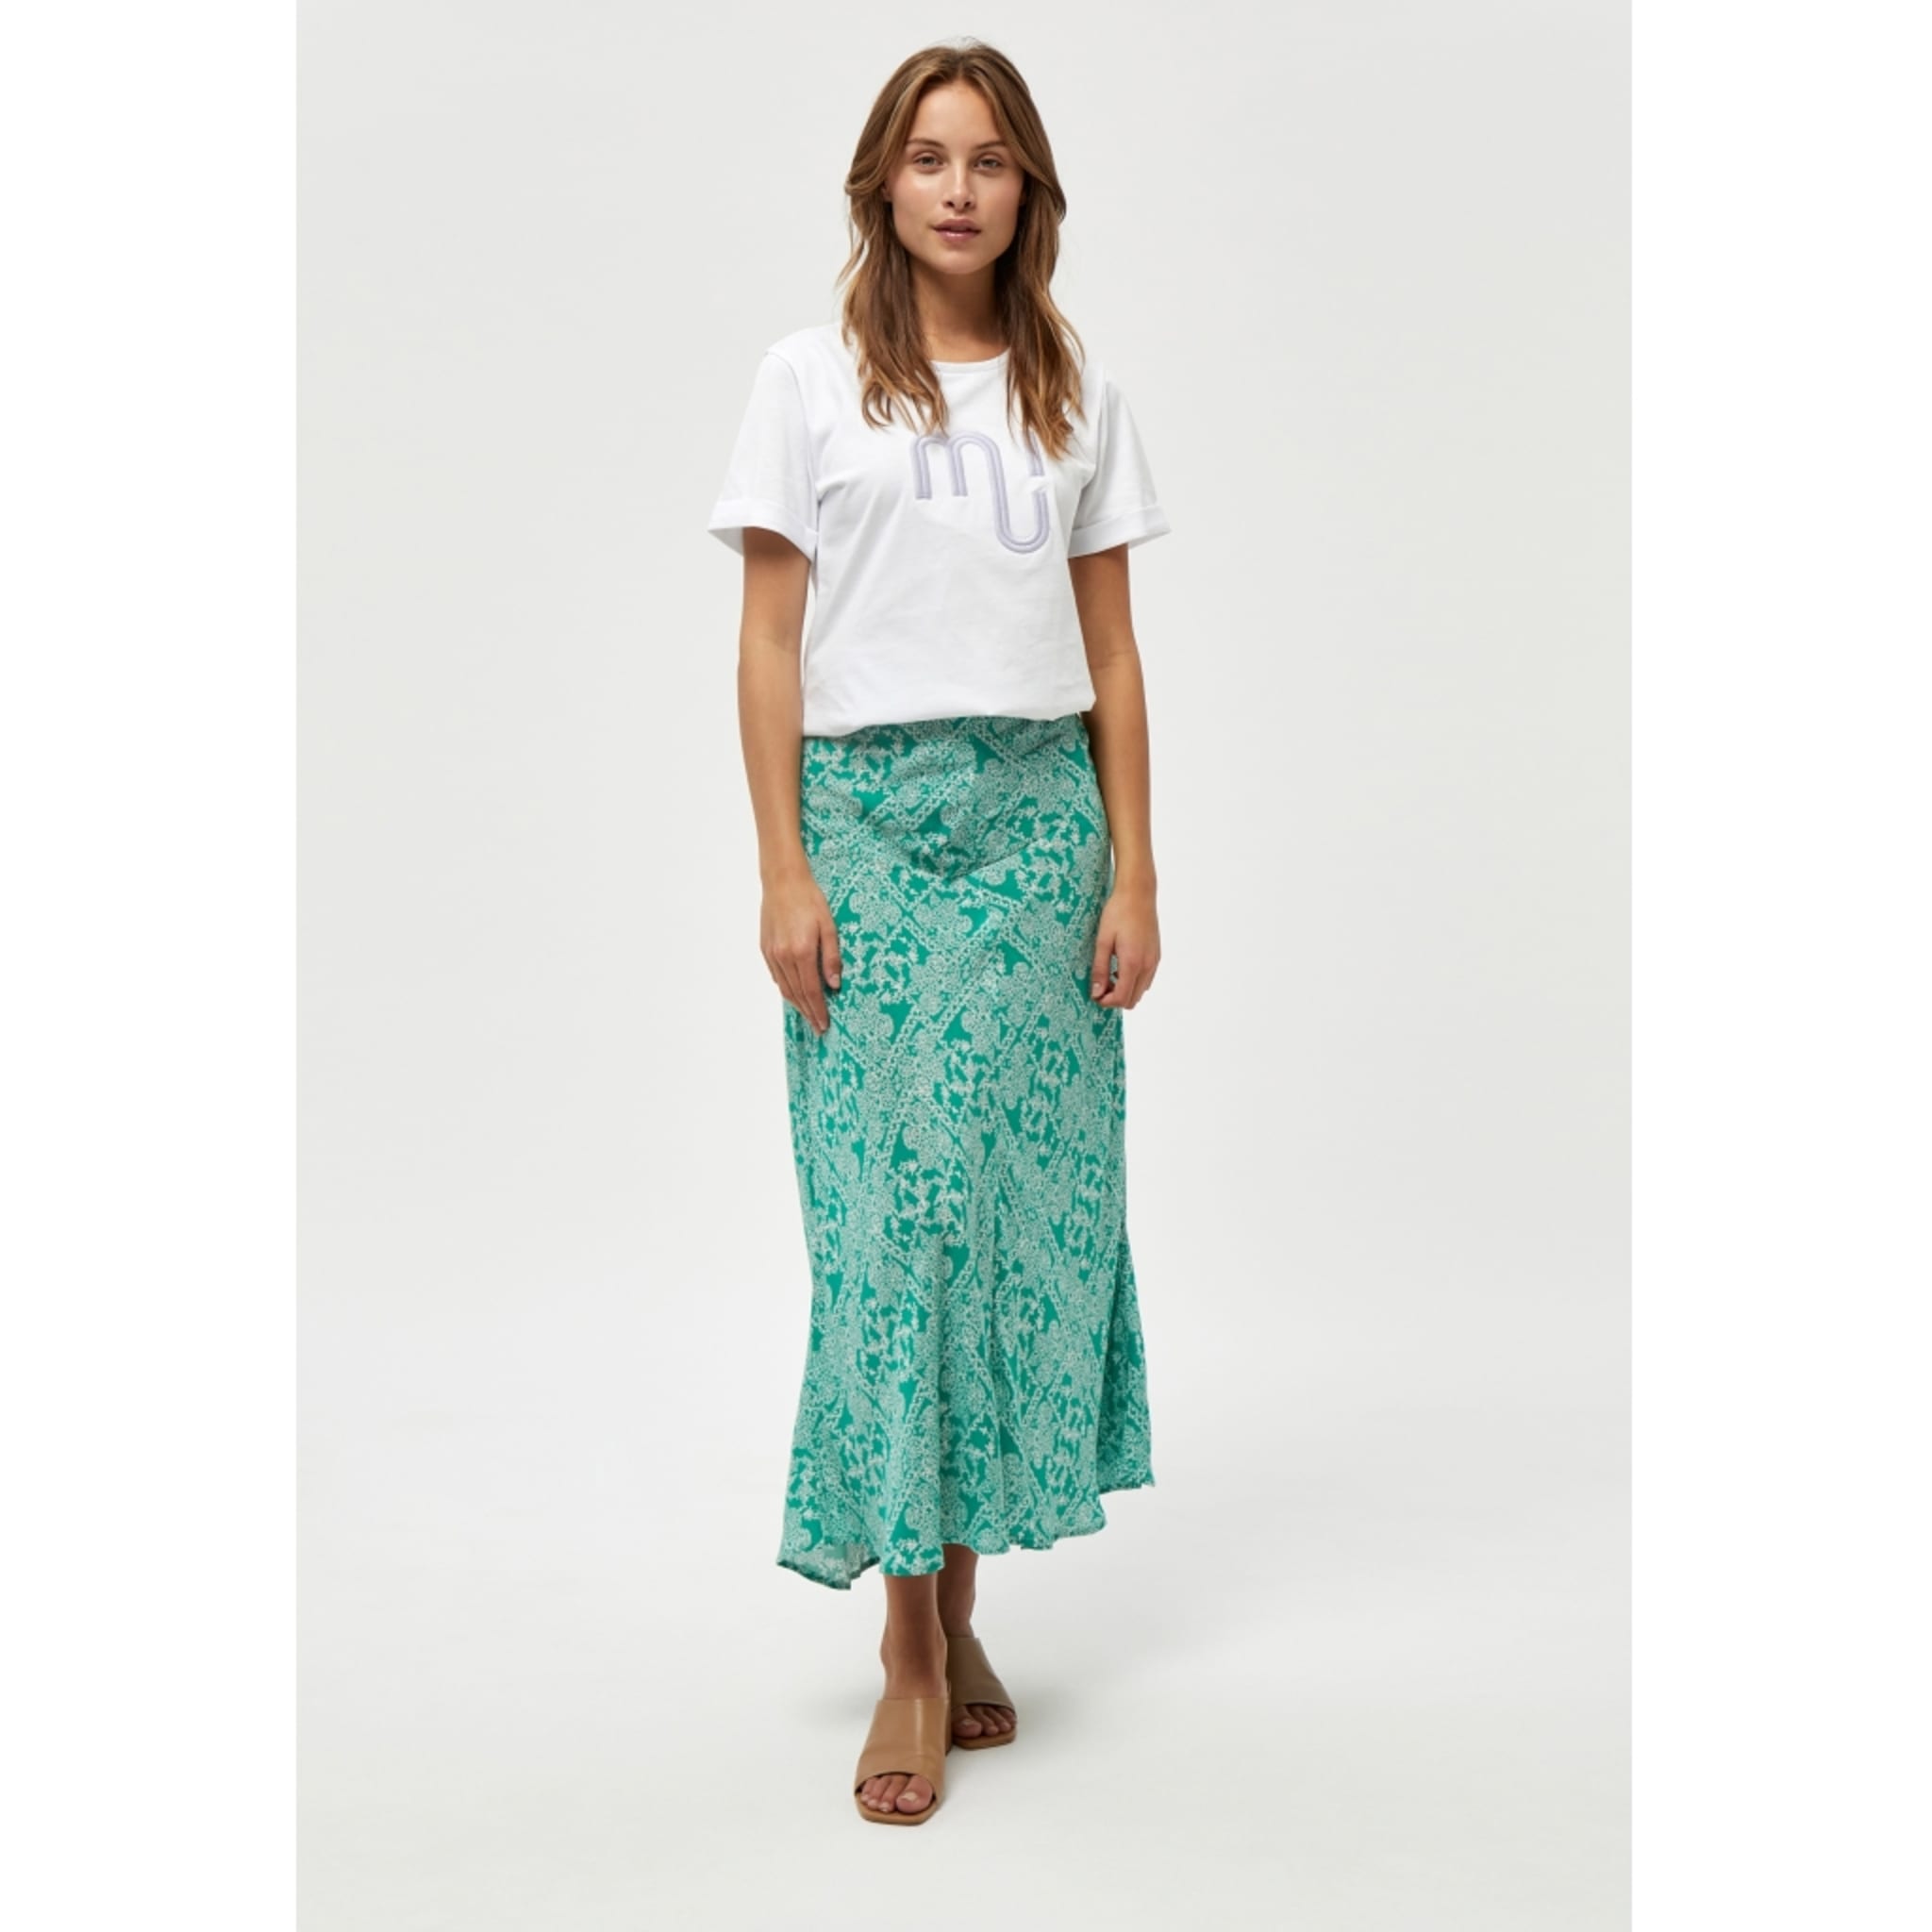 Aika Skirt, ivy green patchwork print